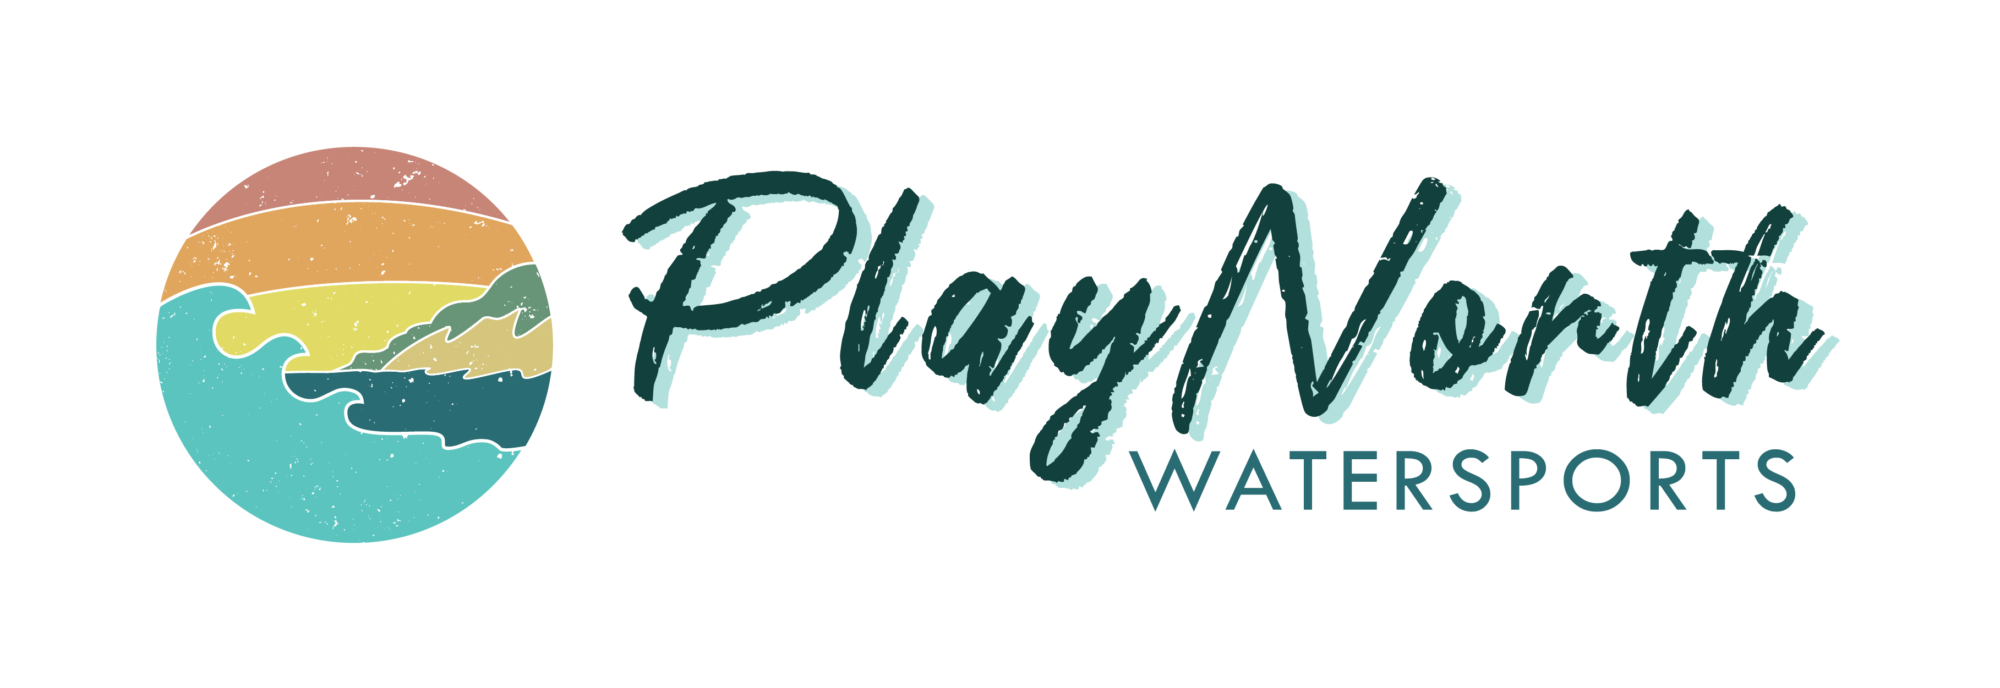 PlayNorth-logo